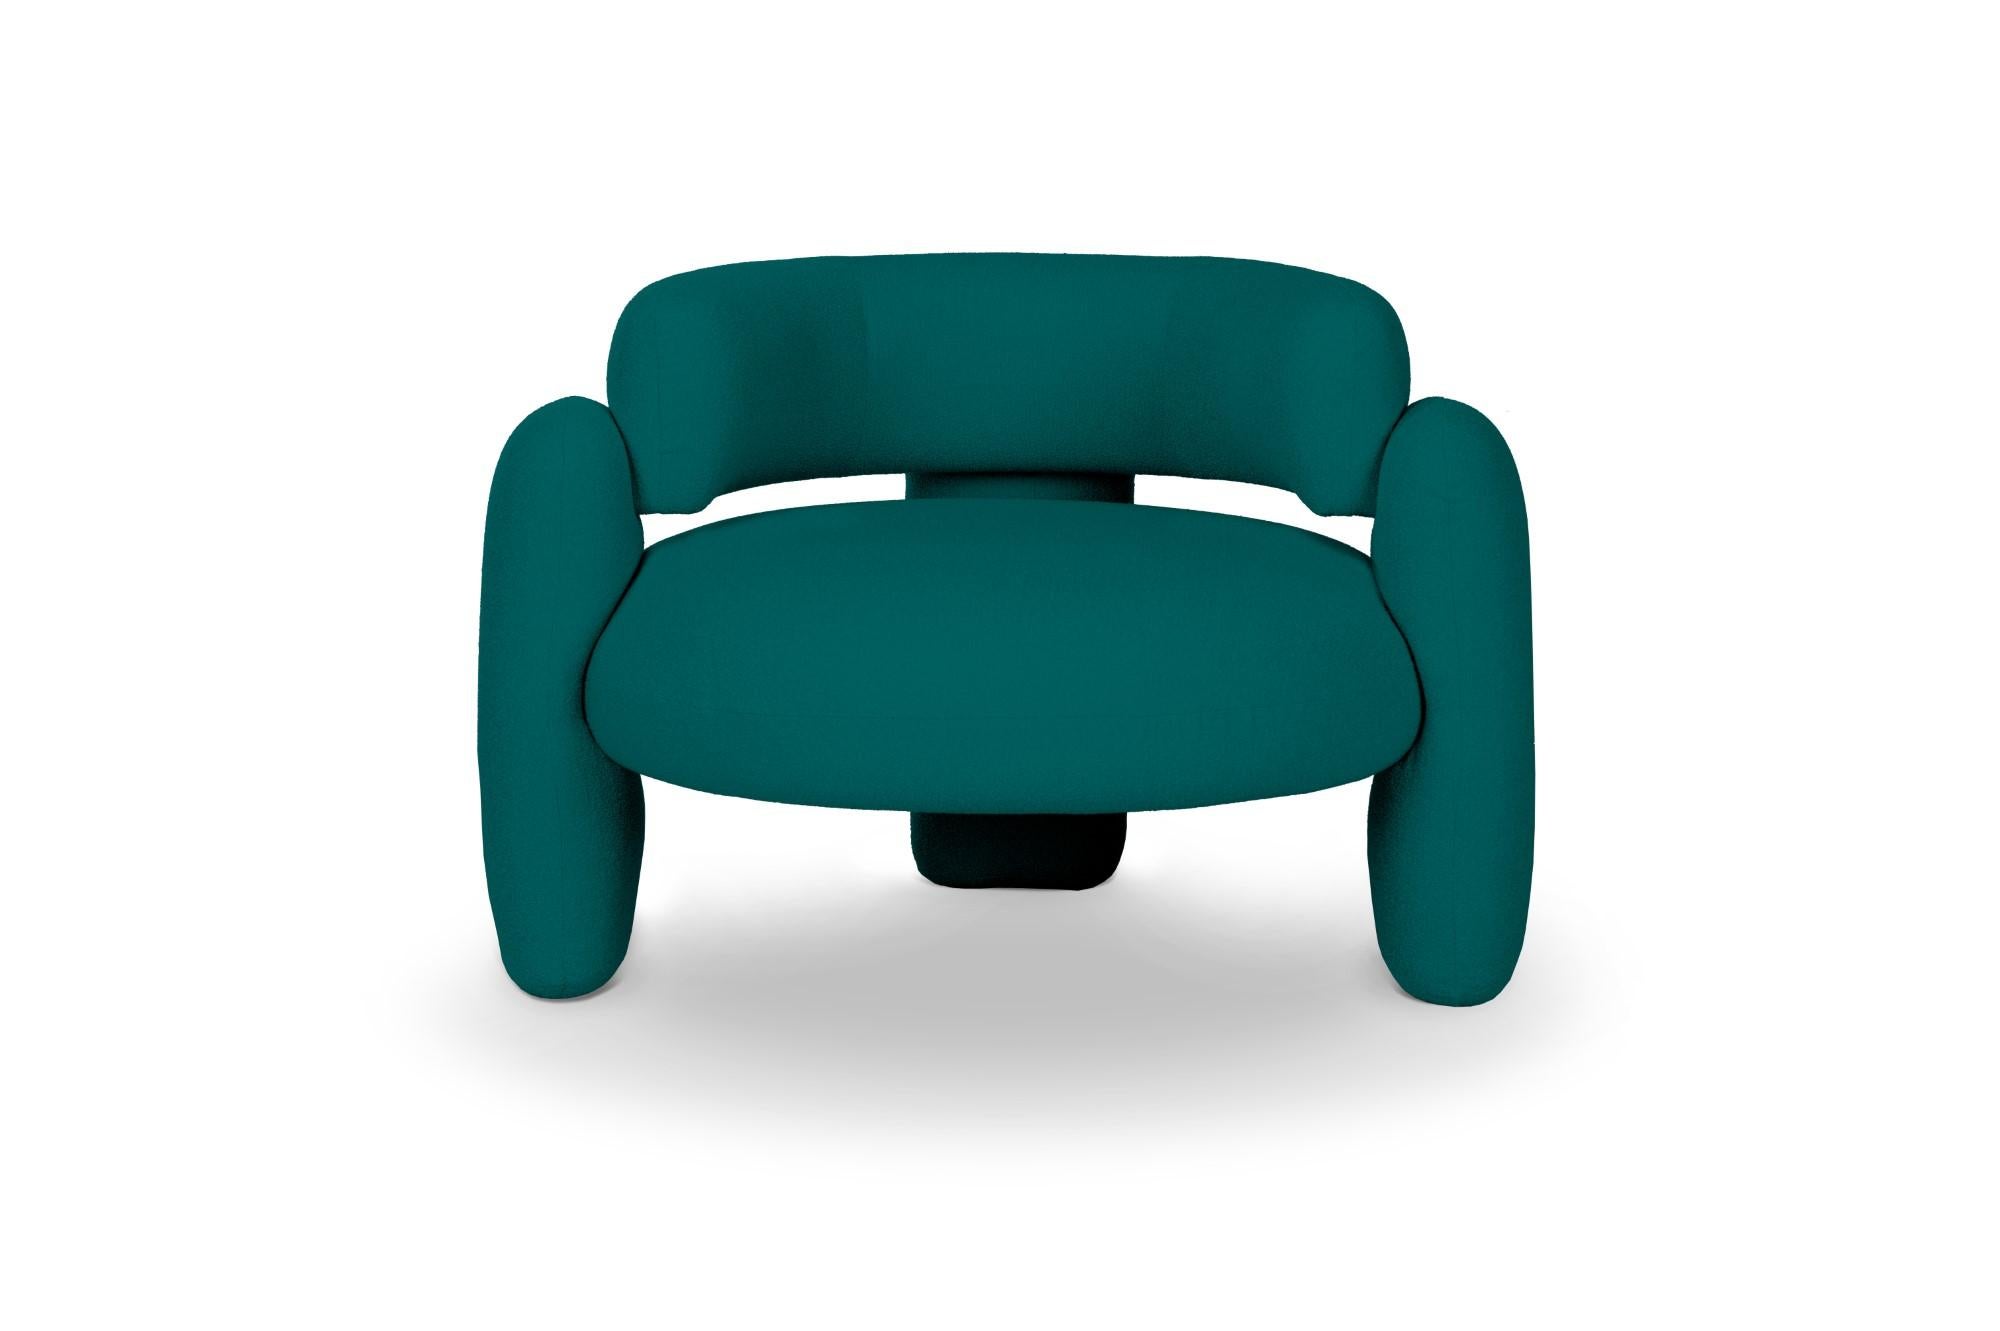 Embrace Lago Canard-Sessel von Royal Stranger 
Abmessungen: B 96 x T 85 x H 68 cm.
Es sind verschiedene Farben und Ausführungen der Polsterung erhältlich. Bitte kontaktieren Sie uns.
MATERIALIEN: Polstermöbel.

Der Embrace Armchair ist eine